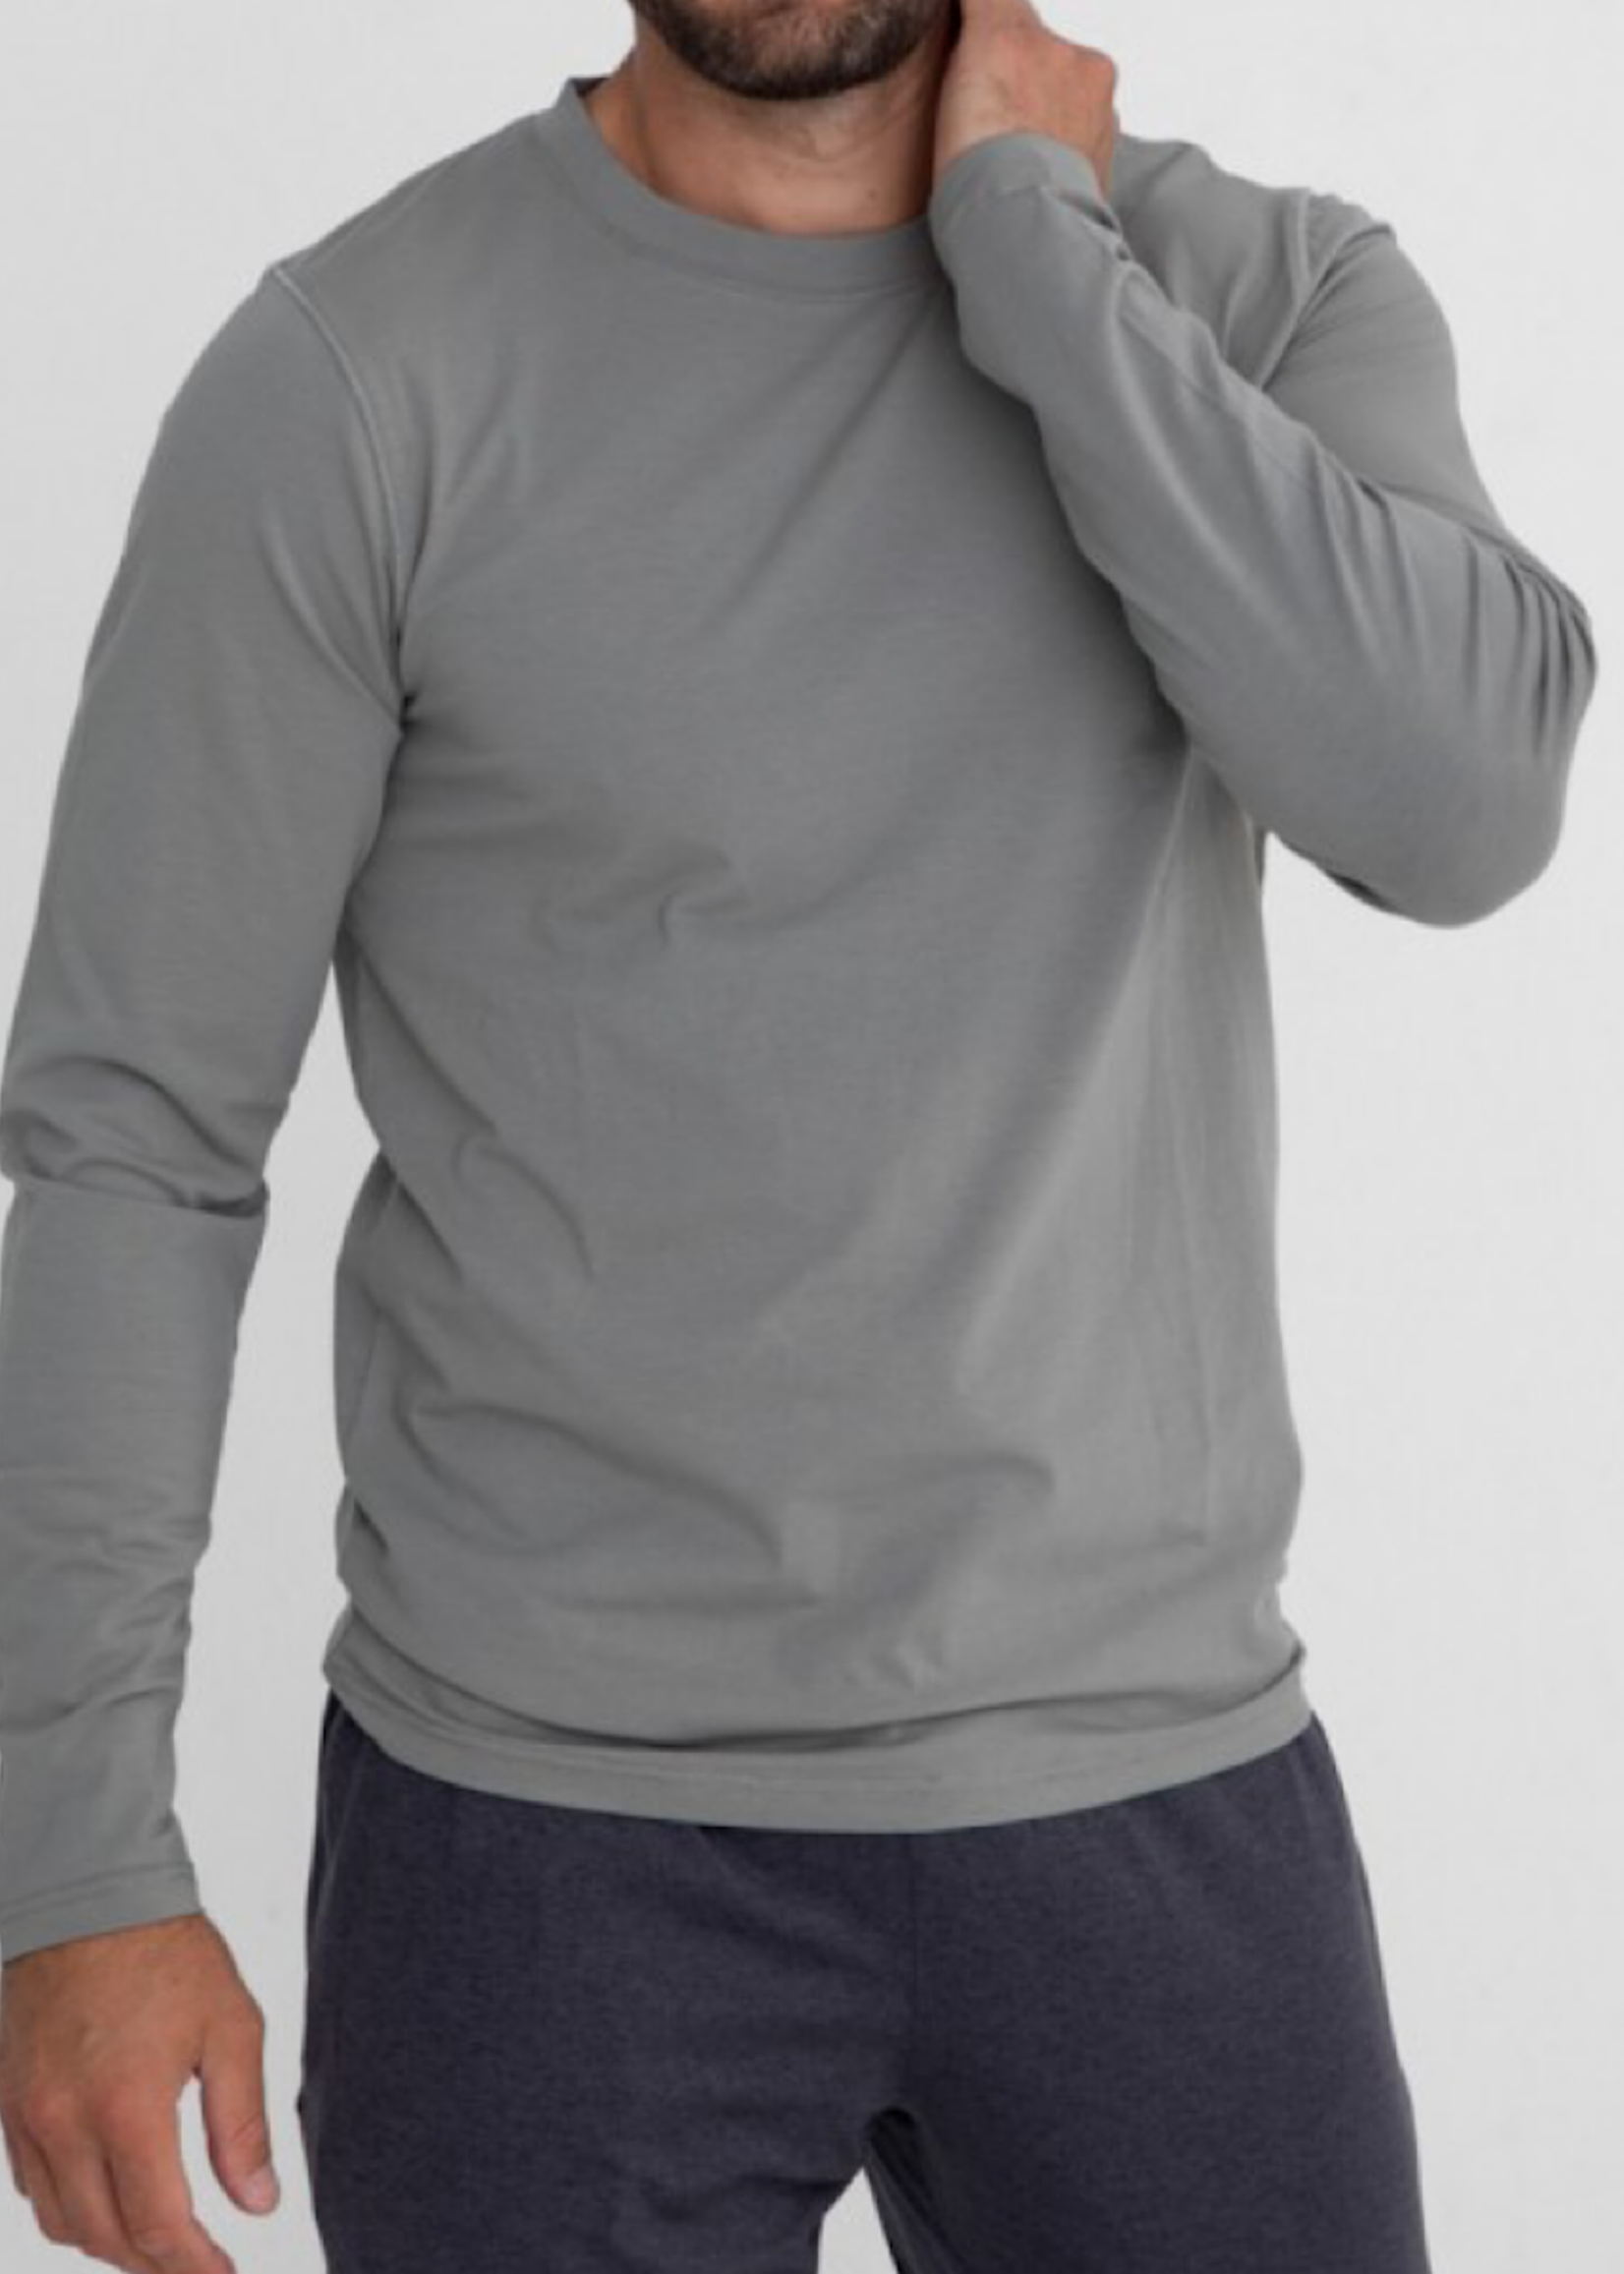 Men's Cotton Blend Long Sleeve Shirt